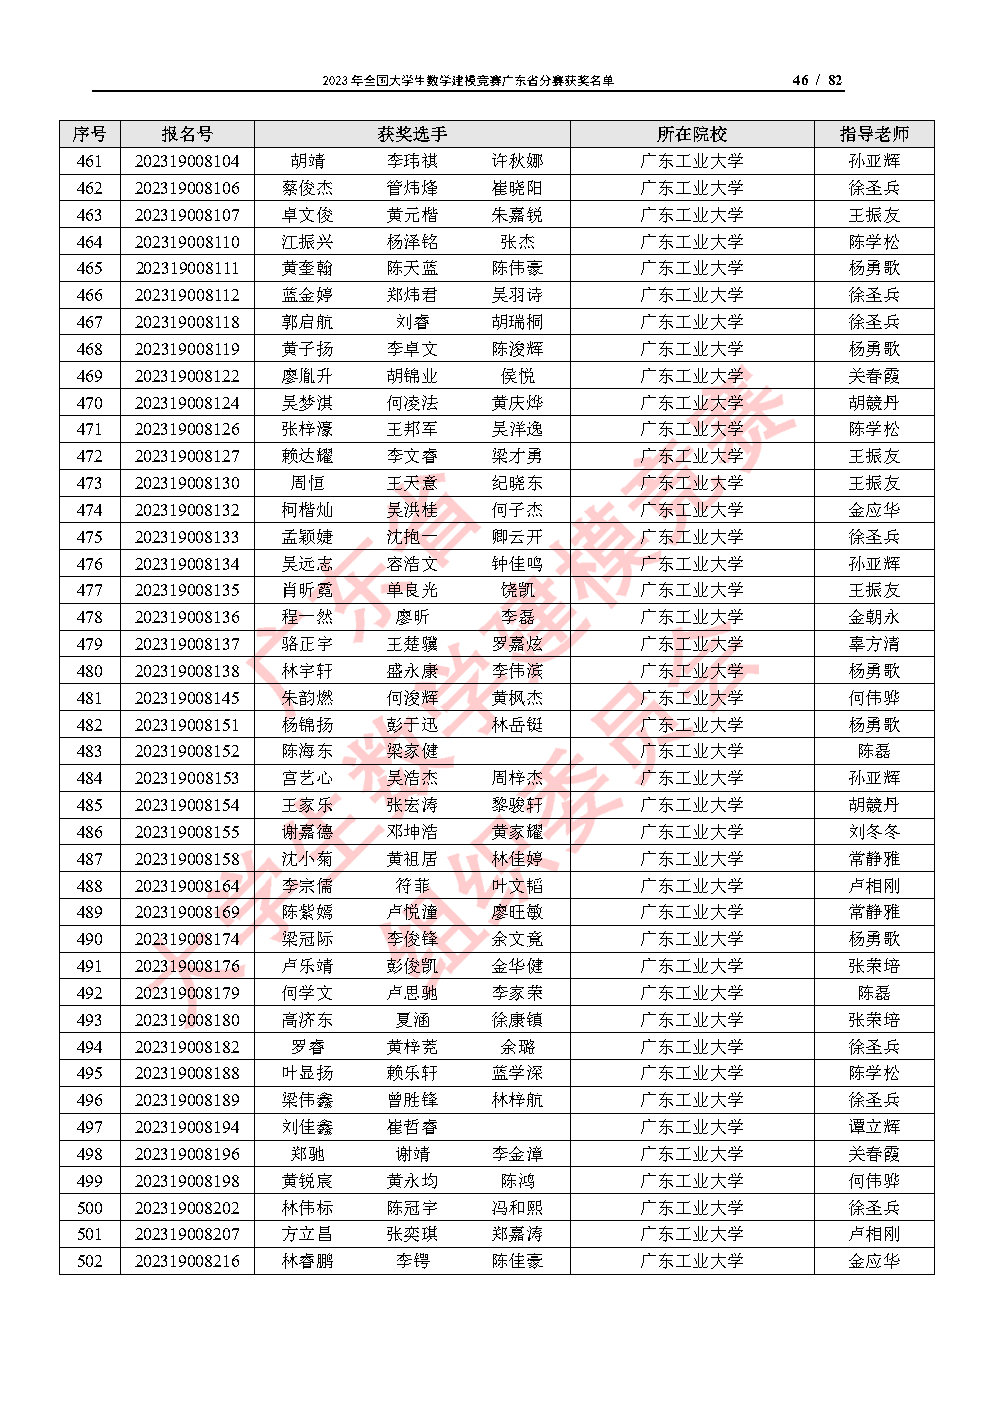 2023年全国大学生数学建模竞赛广东省分赛获奖名单_Page46.jpg